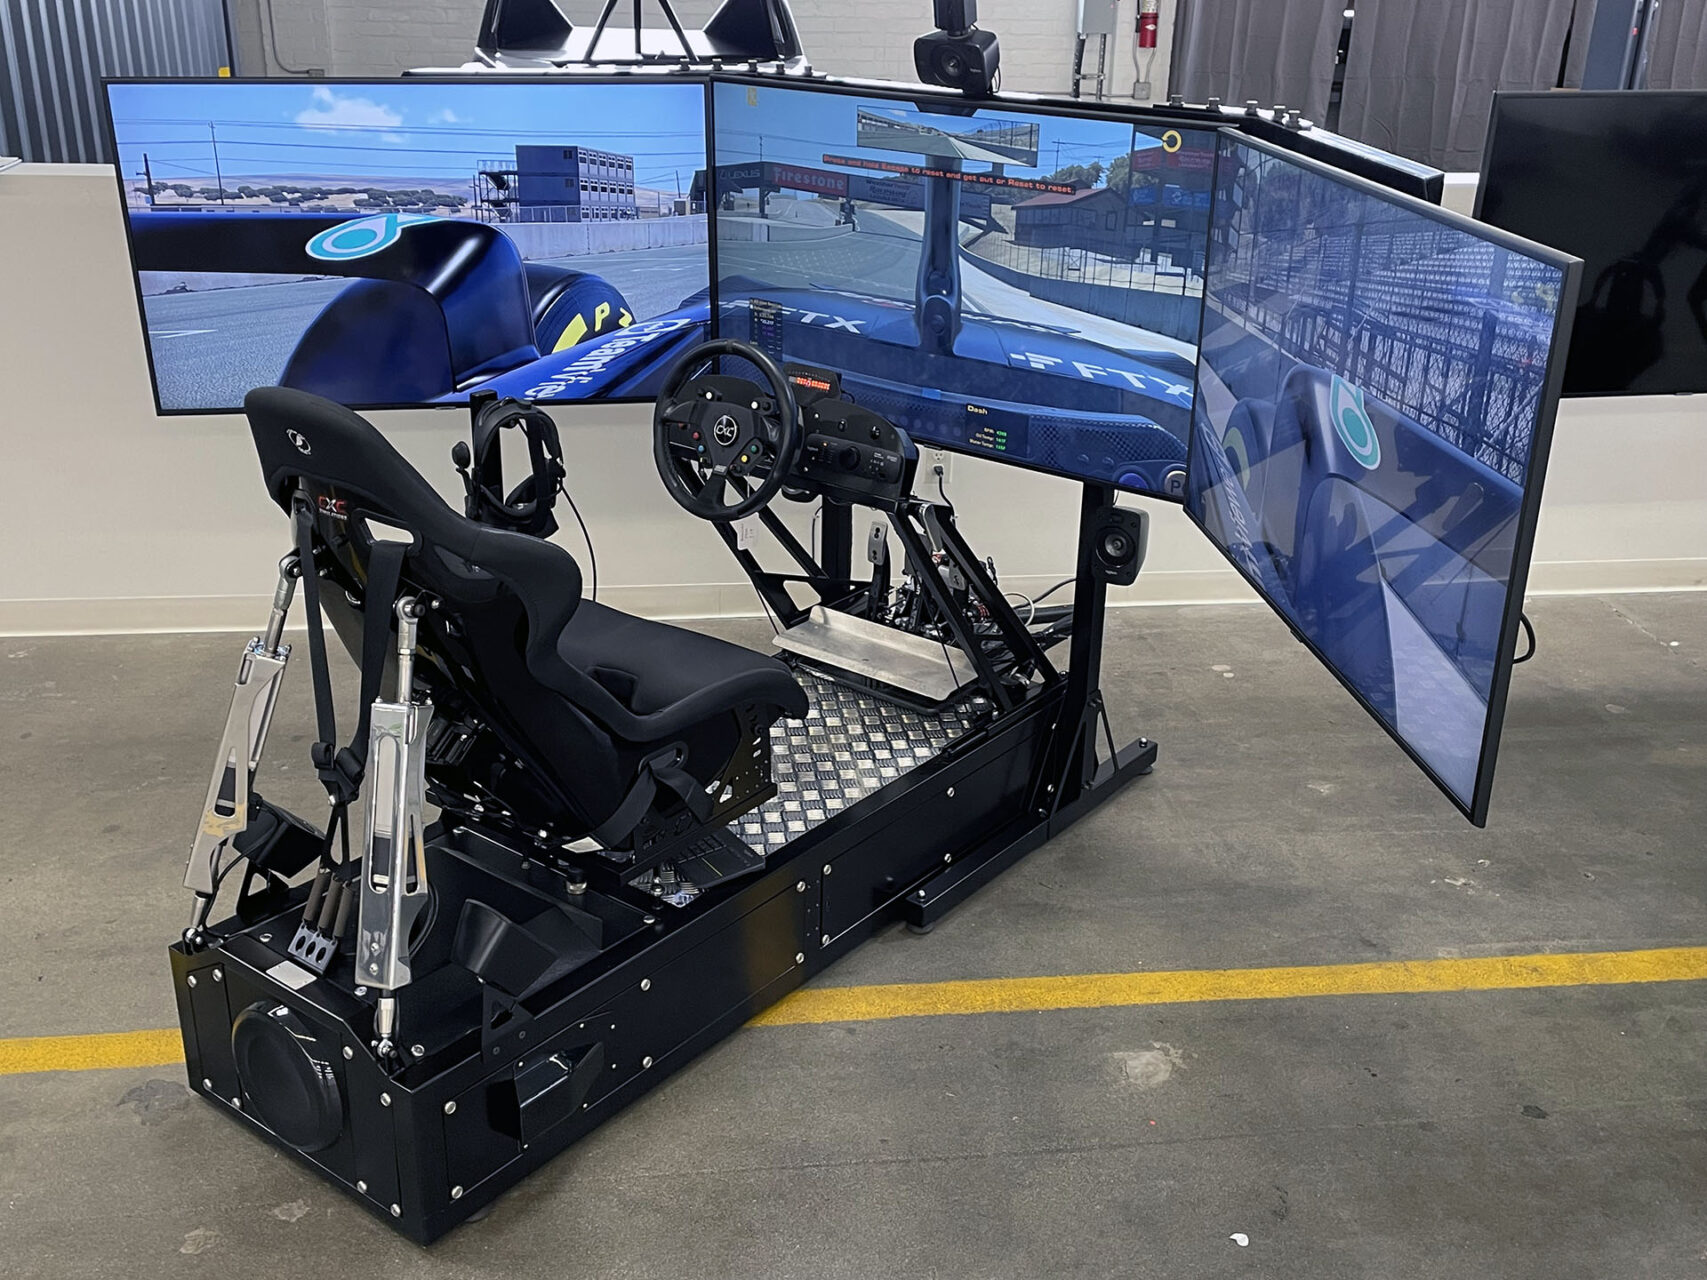 Racing Simulators